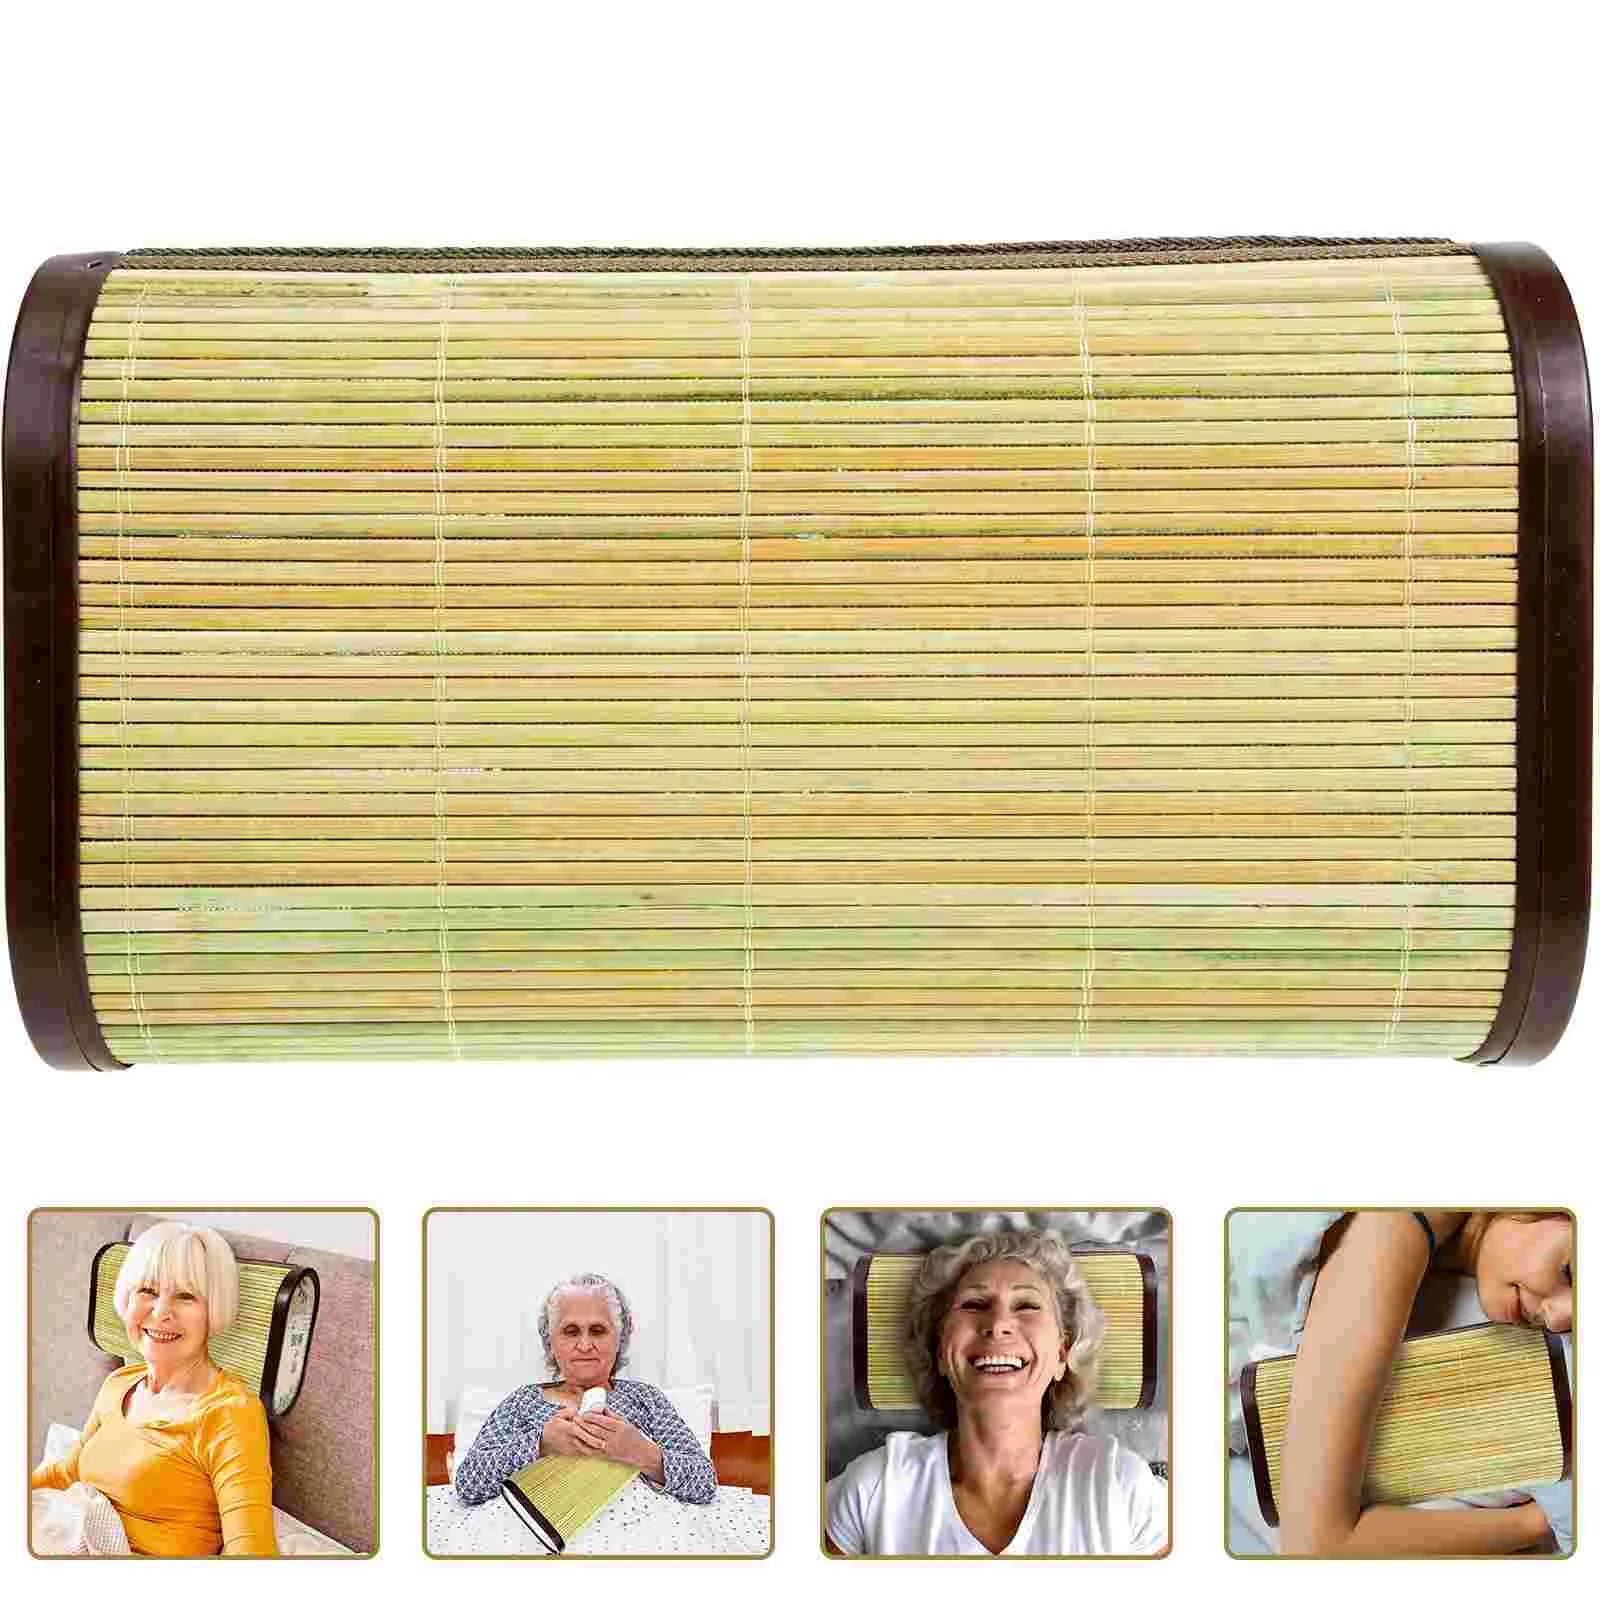 

Back Sleeper Pillows Sauna Woven Pillow Japanese Accessories Spa Neck Spa Pillow Steam Room Accessories Headrest